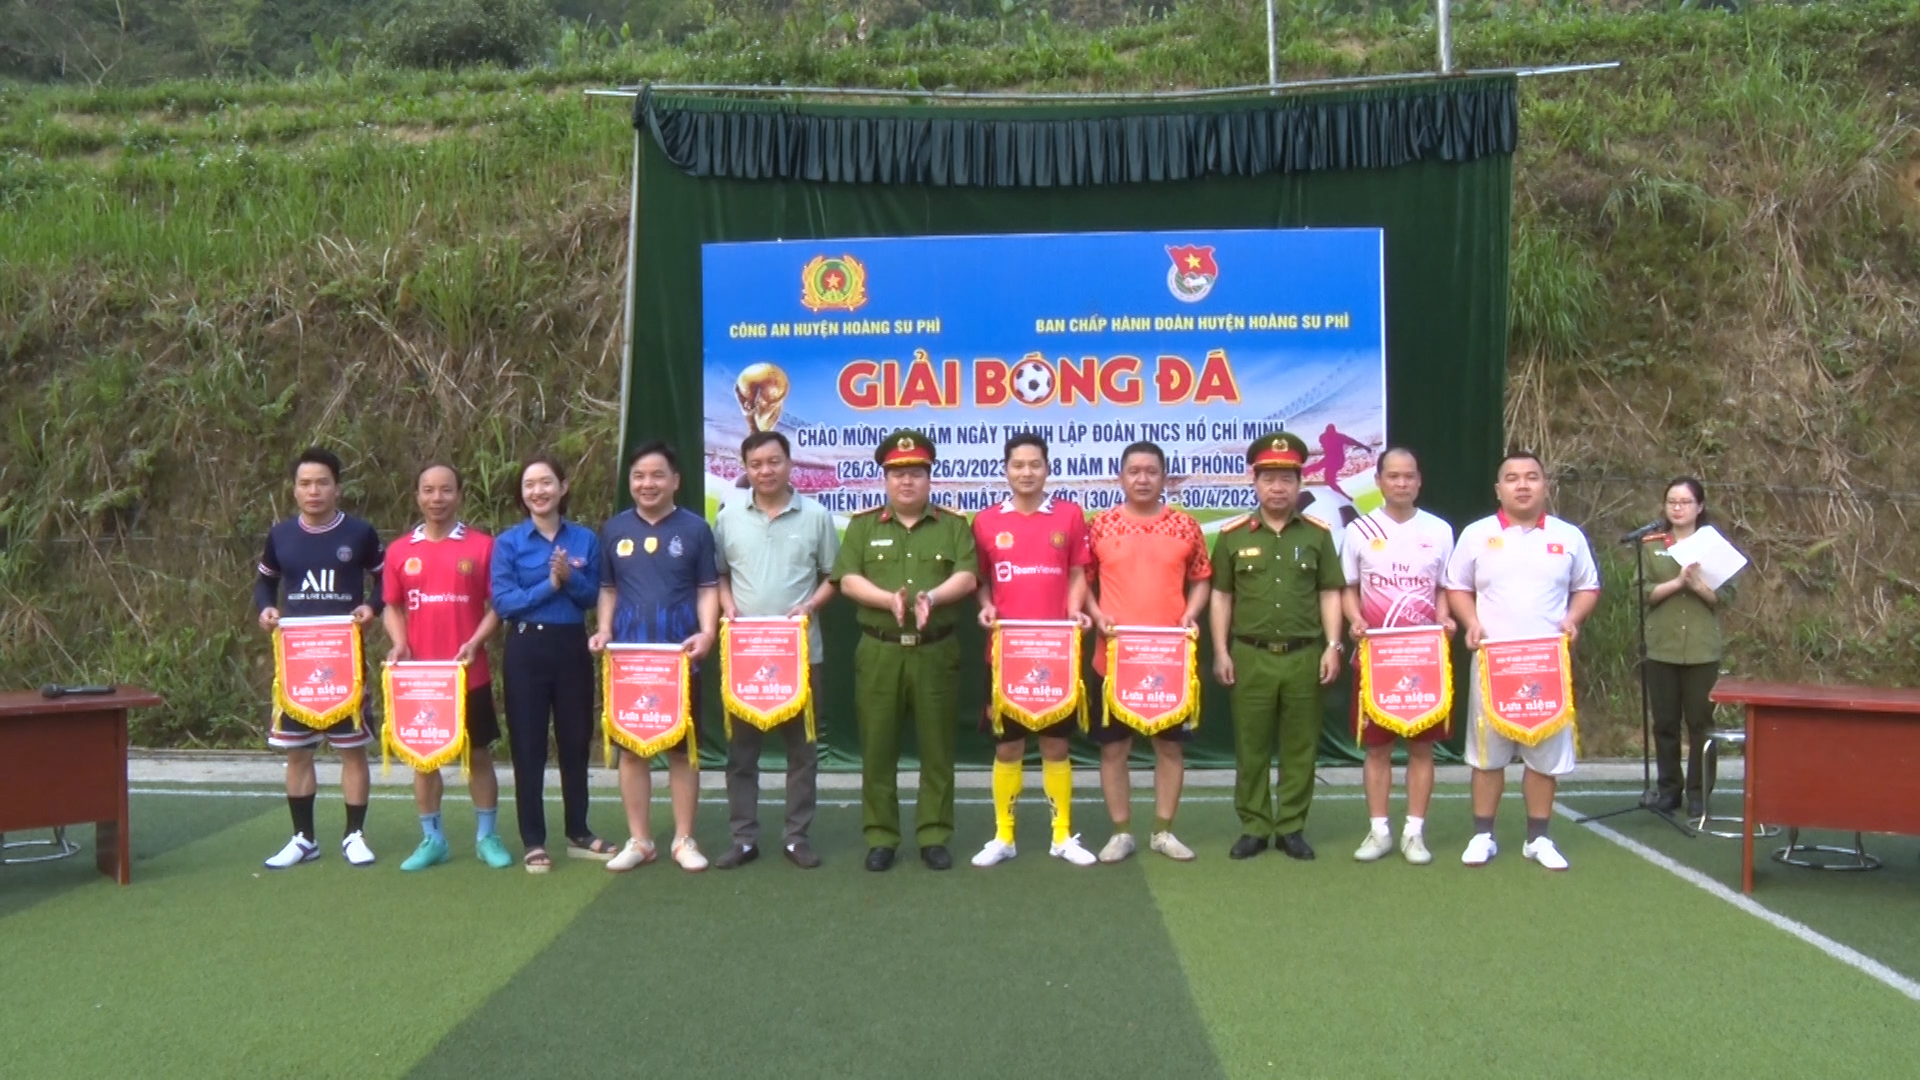 Công an huyện Hoàng Su Phì khai mạc Giải bóng đá chào mừng ngày thành lập Đoàn 26/3